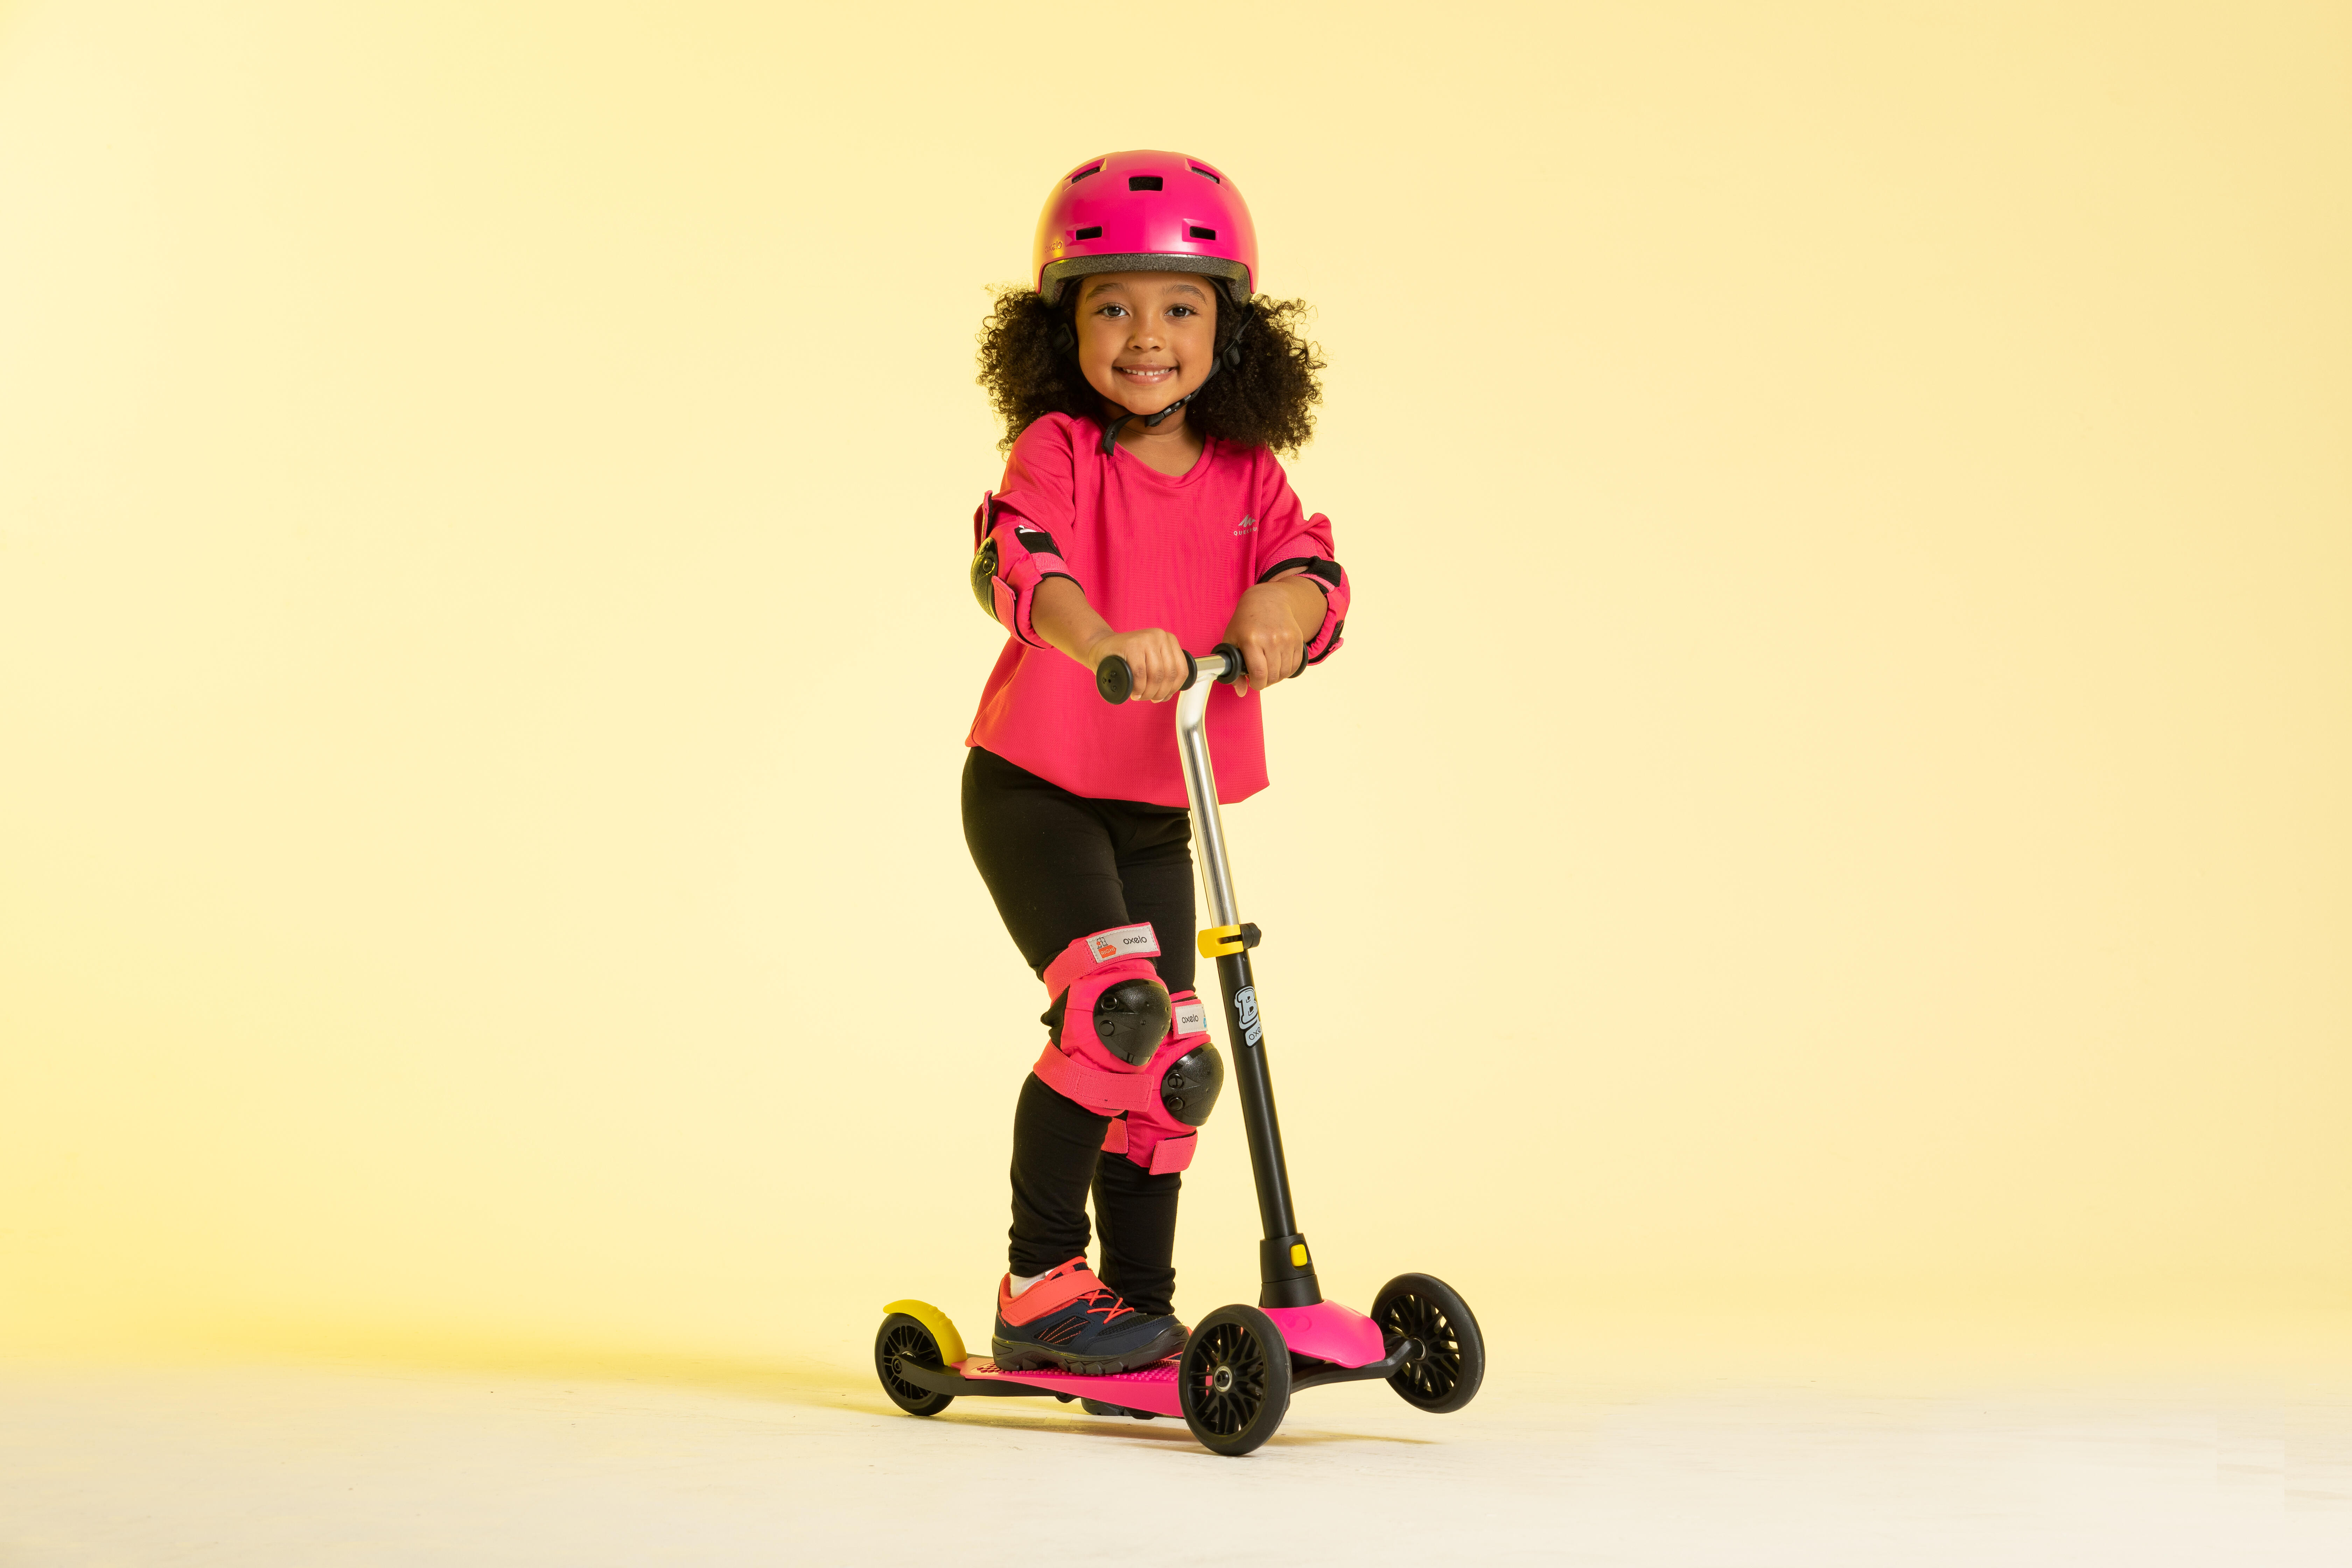 Casque pour patin, skateboard et trottinette enfant - B 100 rose - OXELO